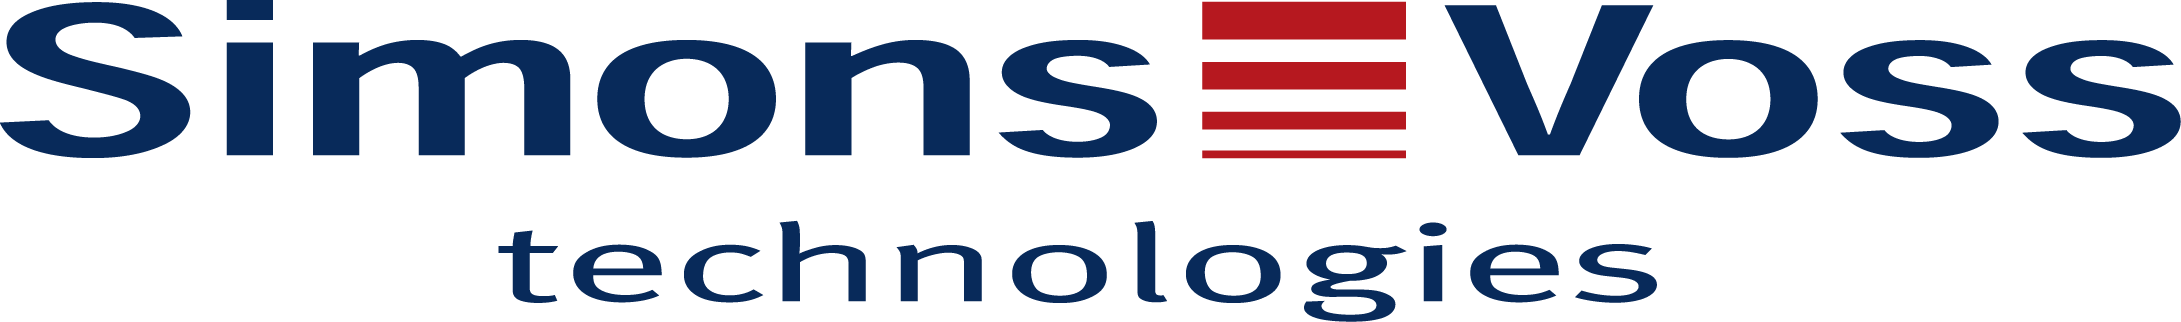 SIMONSVOSS TECHNOLOGIES